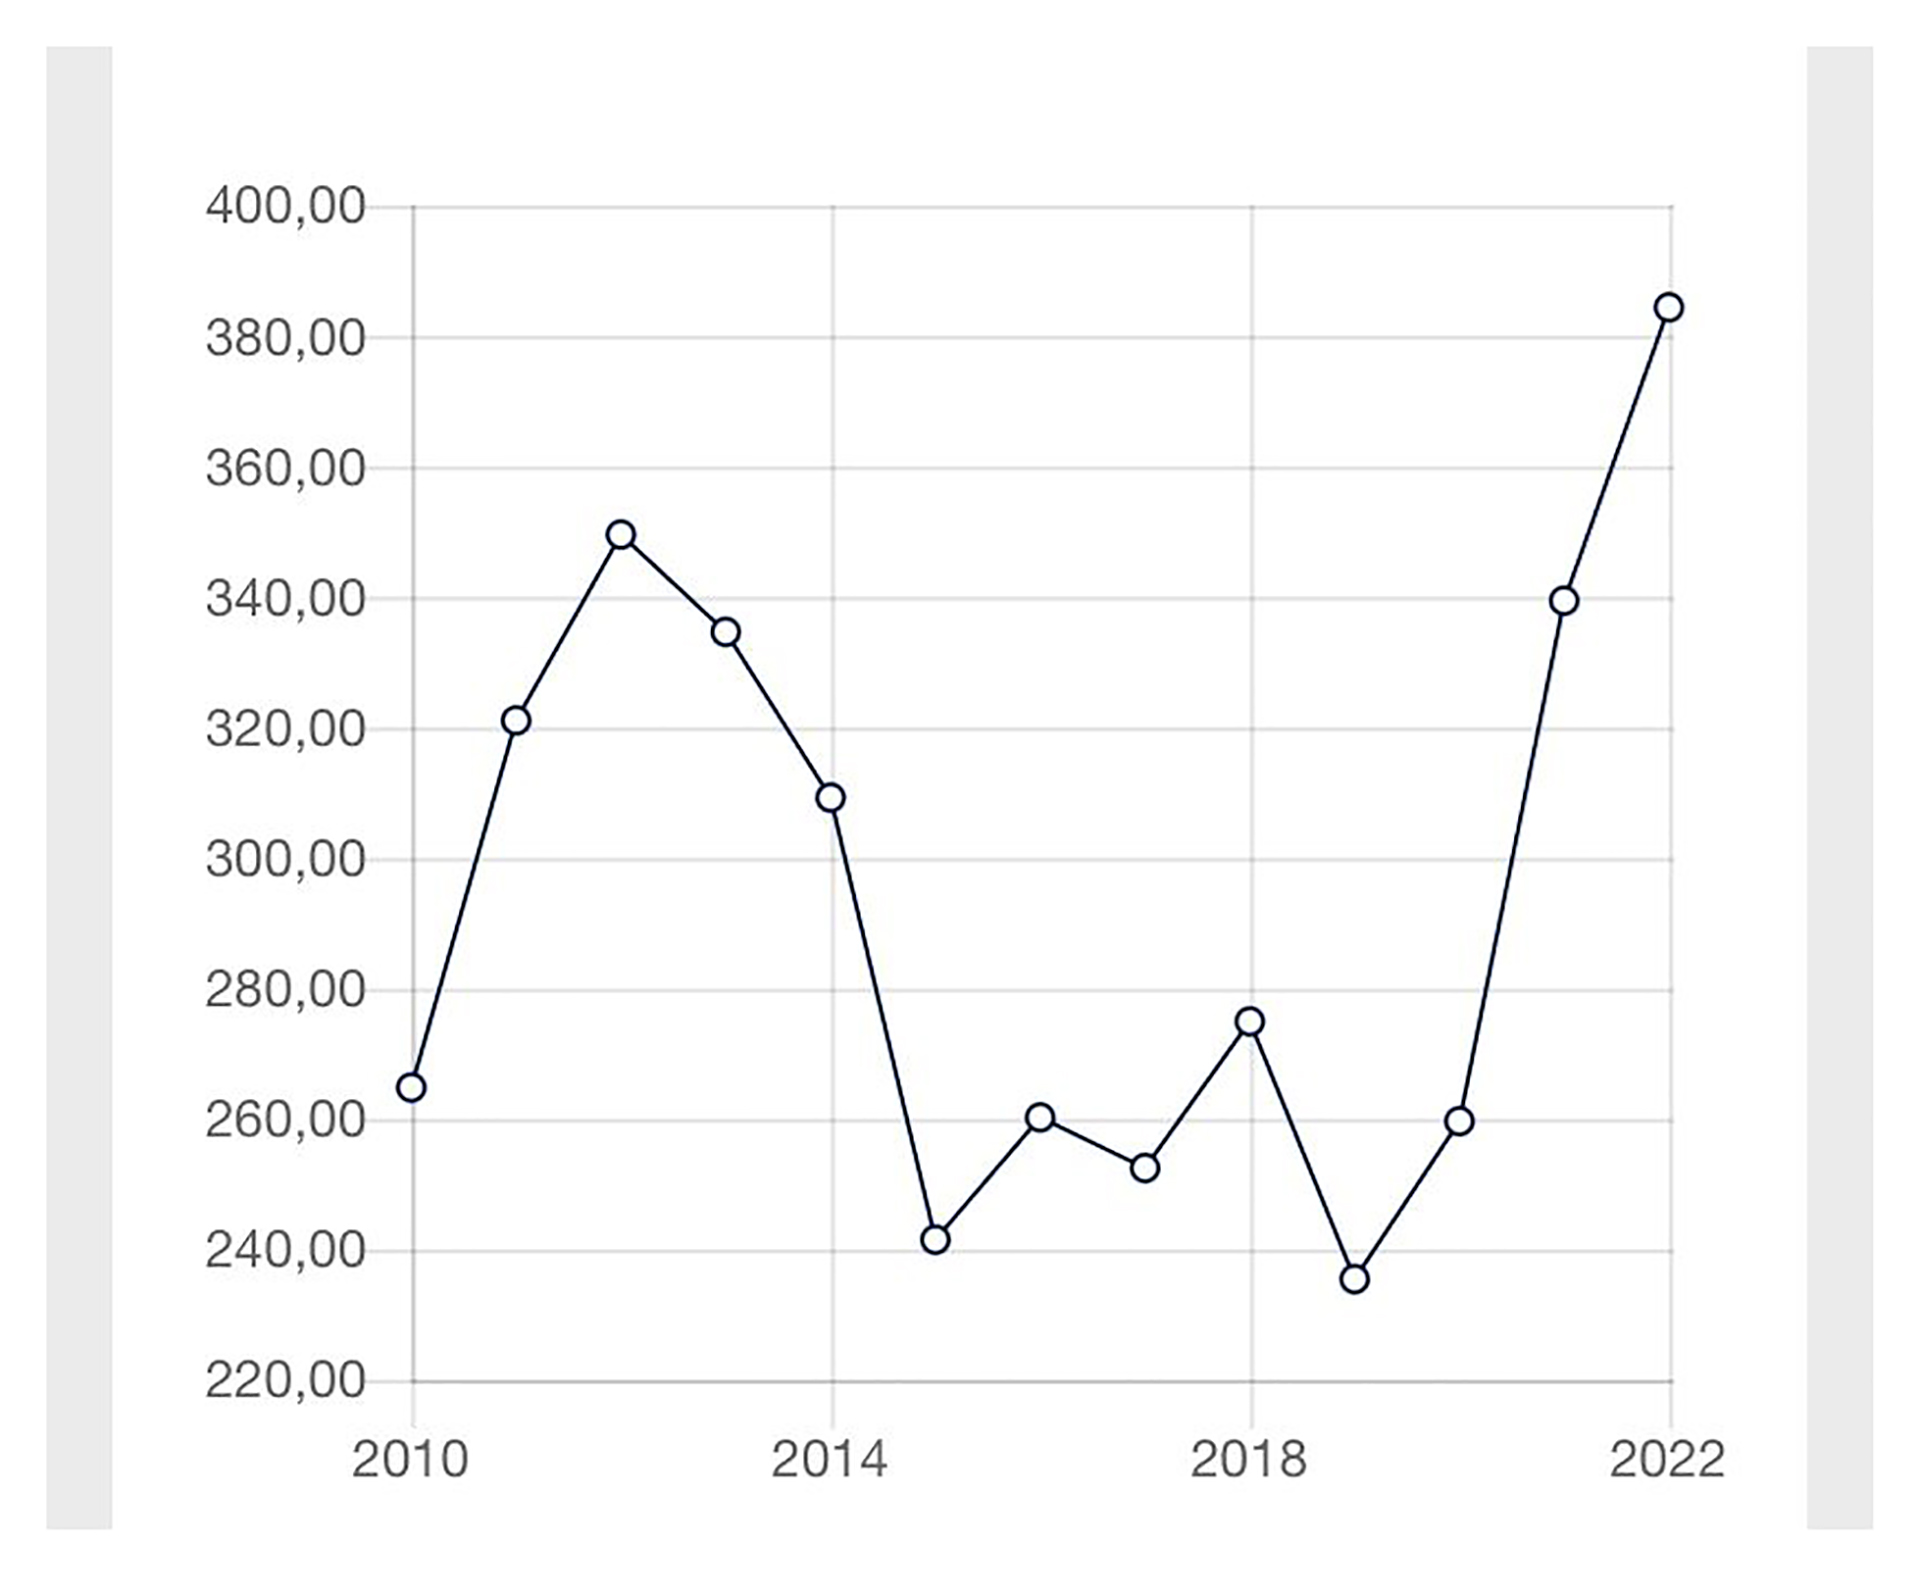 Precios pizarra en dólares de soja desde 2010 hasta la actualidad. (fuente: Bolsa de Comercio de Rosario)